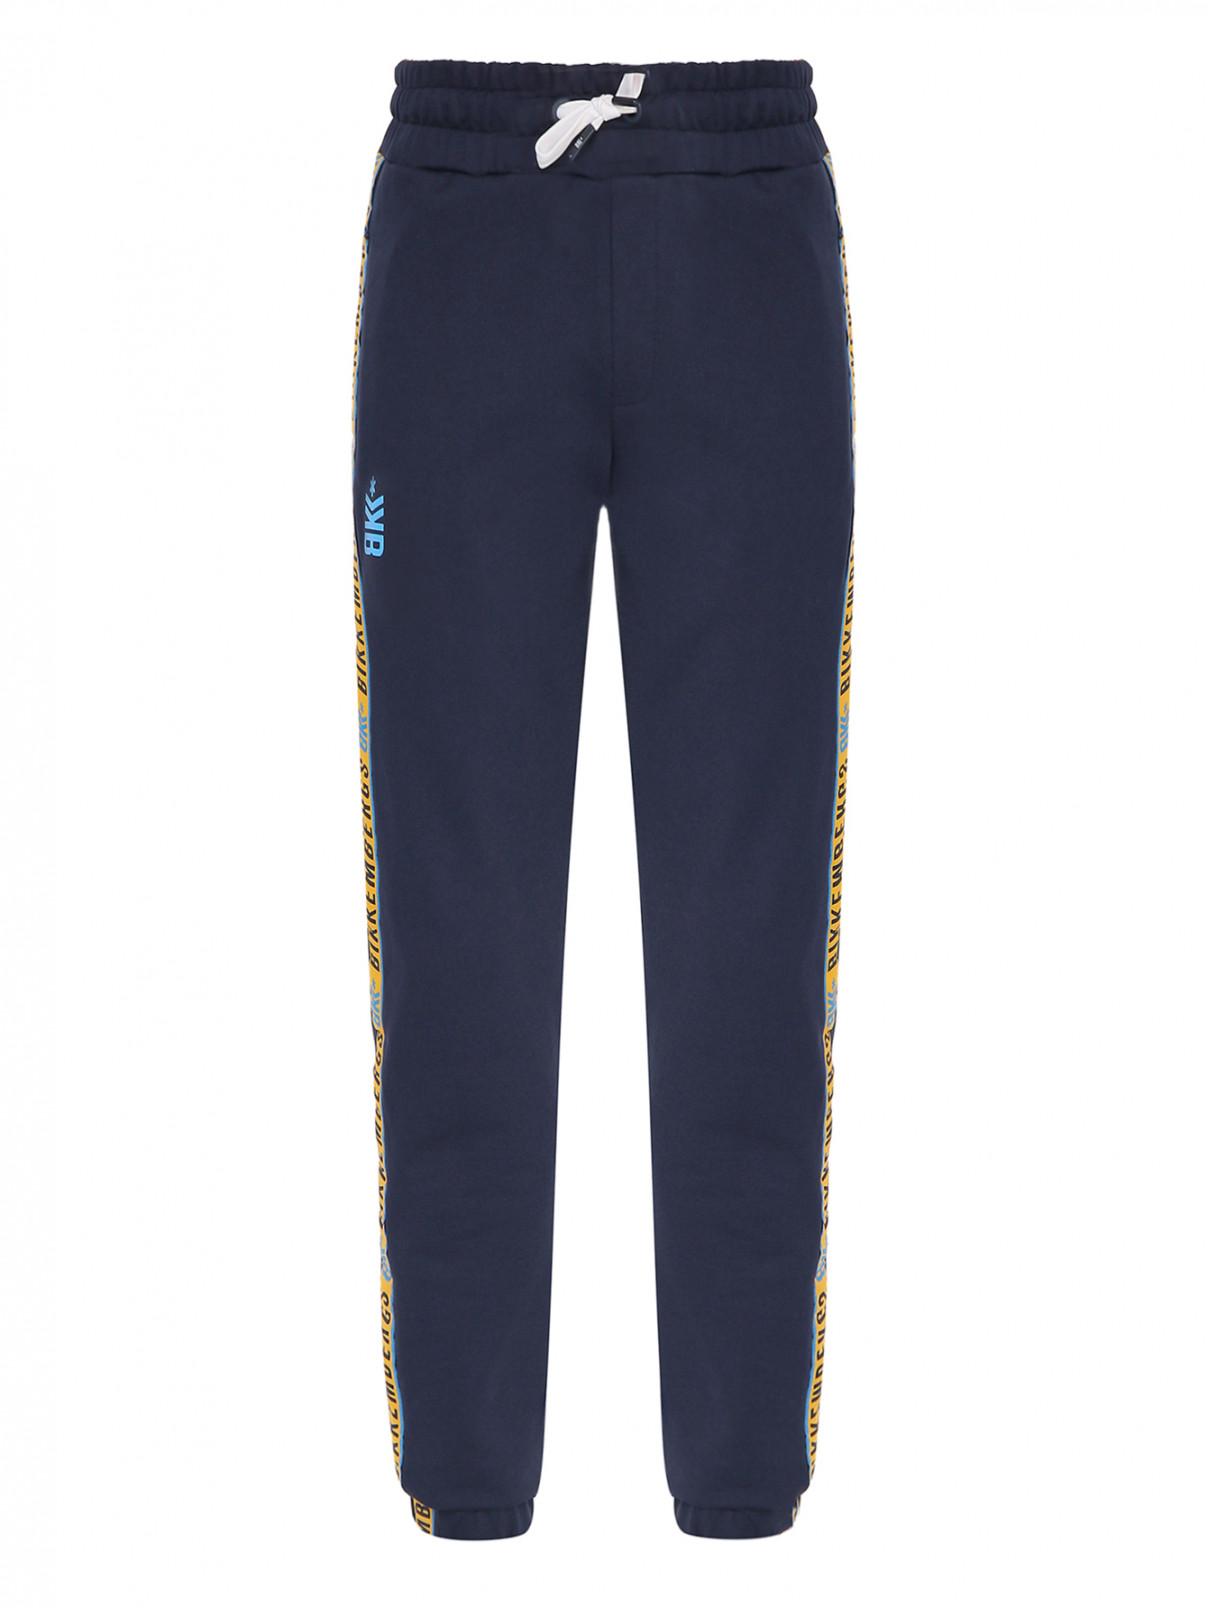 Трикотажные брюки с лампасами и карманами Bikkembergs  –  Общий вид  – Цвет:  Синий